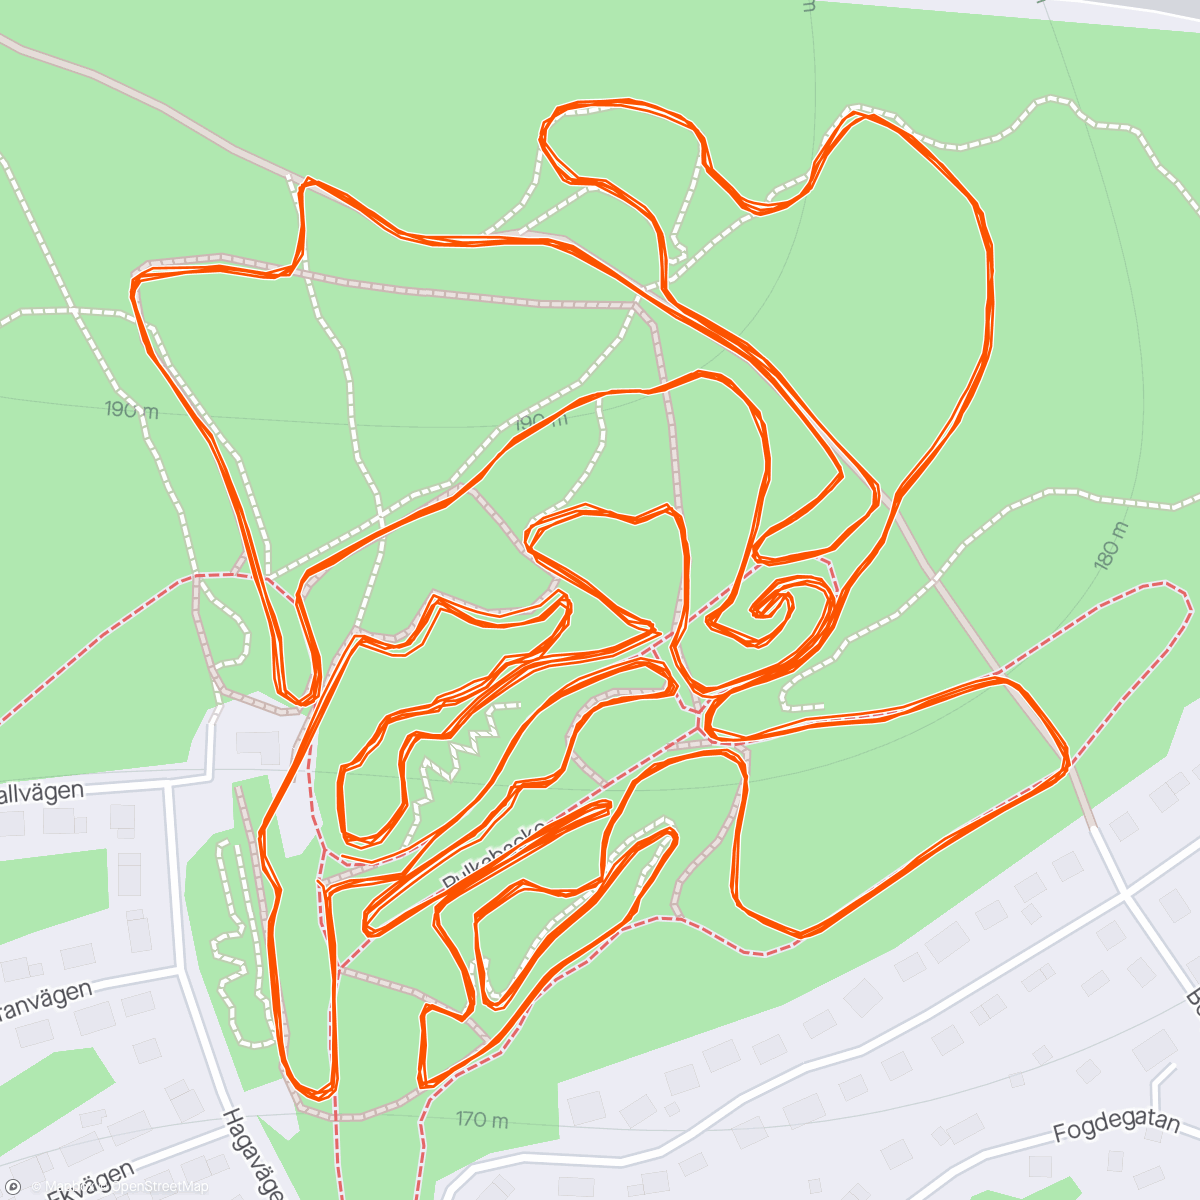 「Klippingracet xco H50 4*5 km」活動的地圖